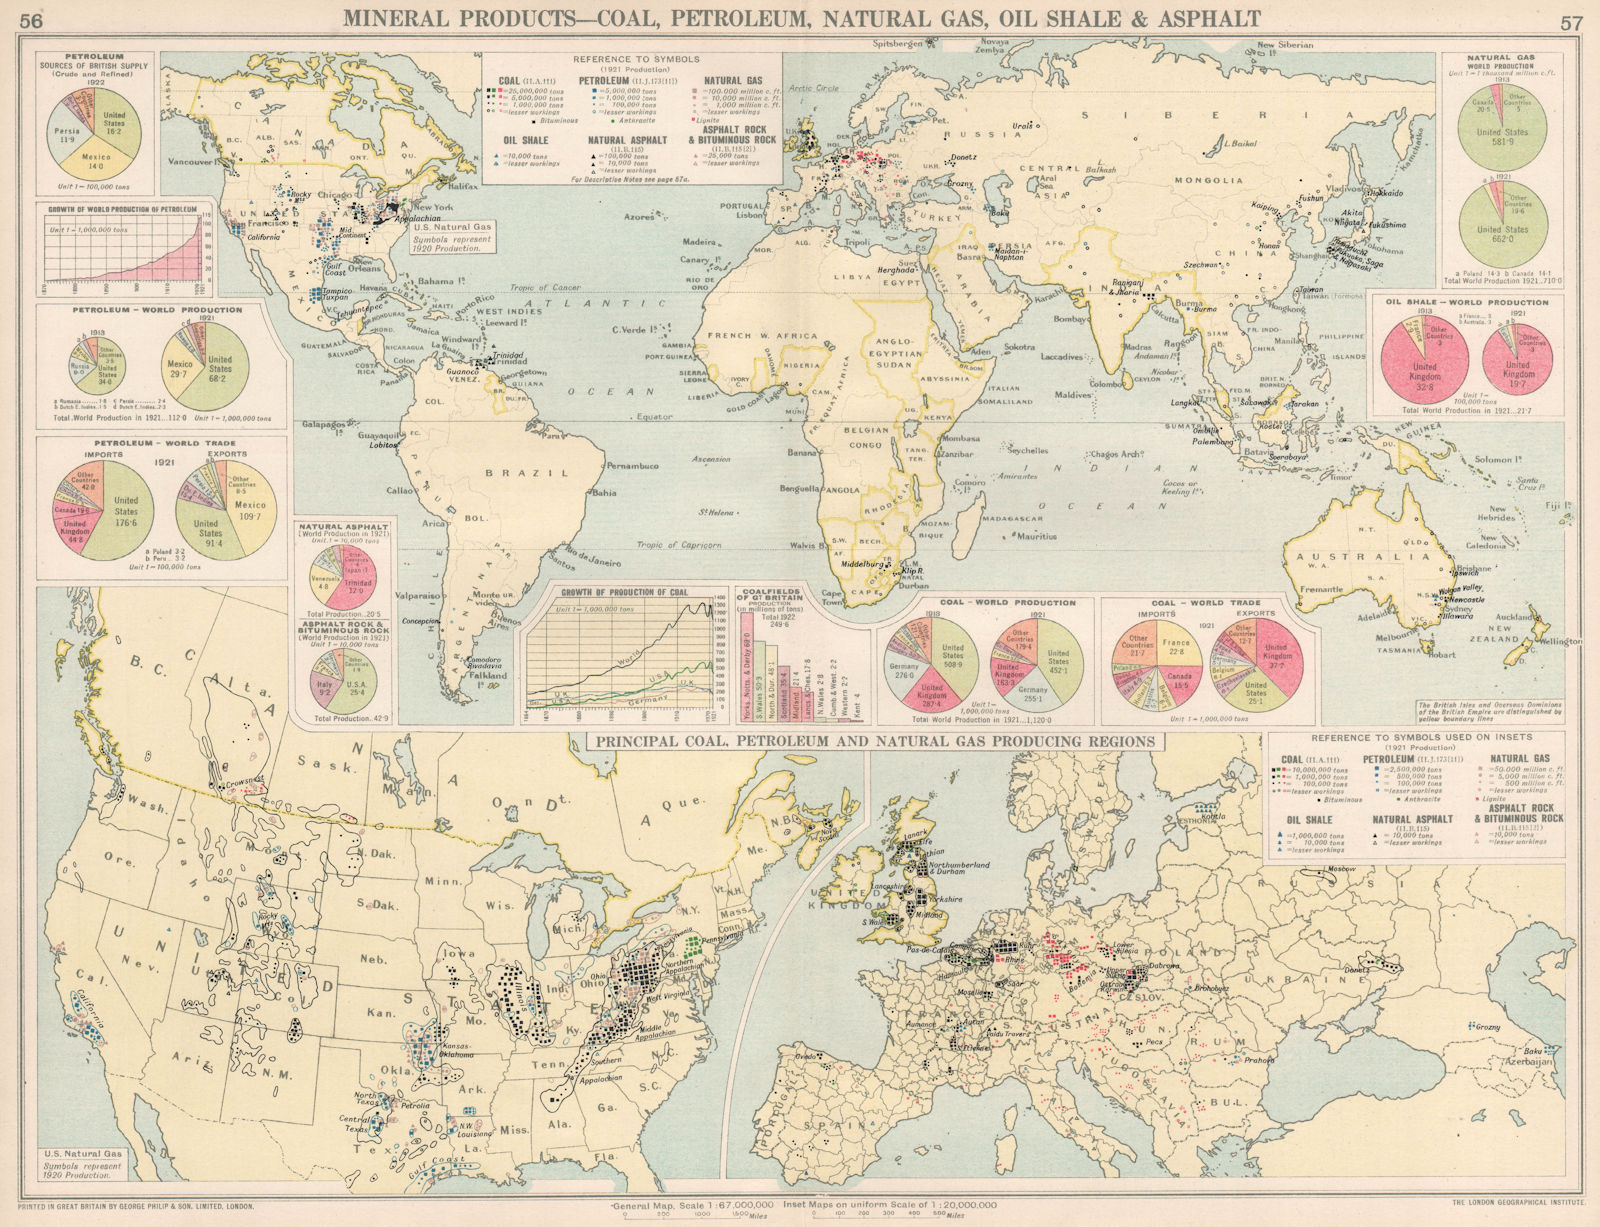 Associate Product World. Coal, Petroleum, Natural Gas, Oil Shale & Asphalt production 1925 map